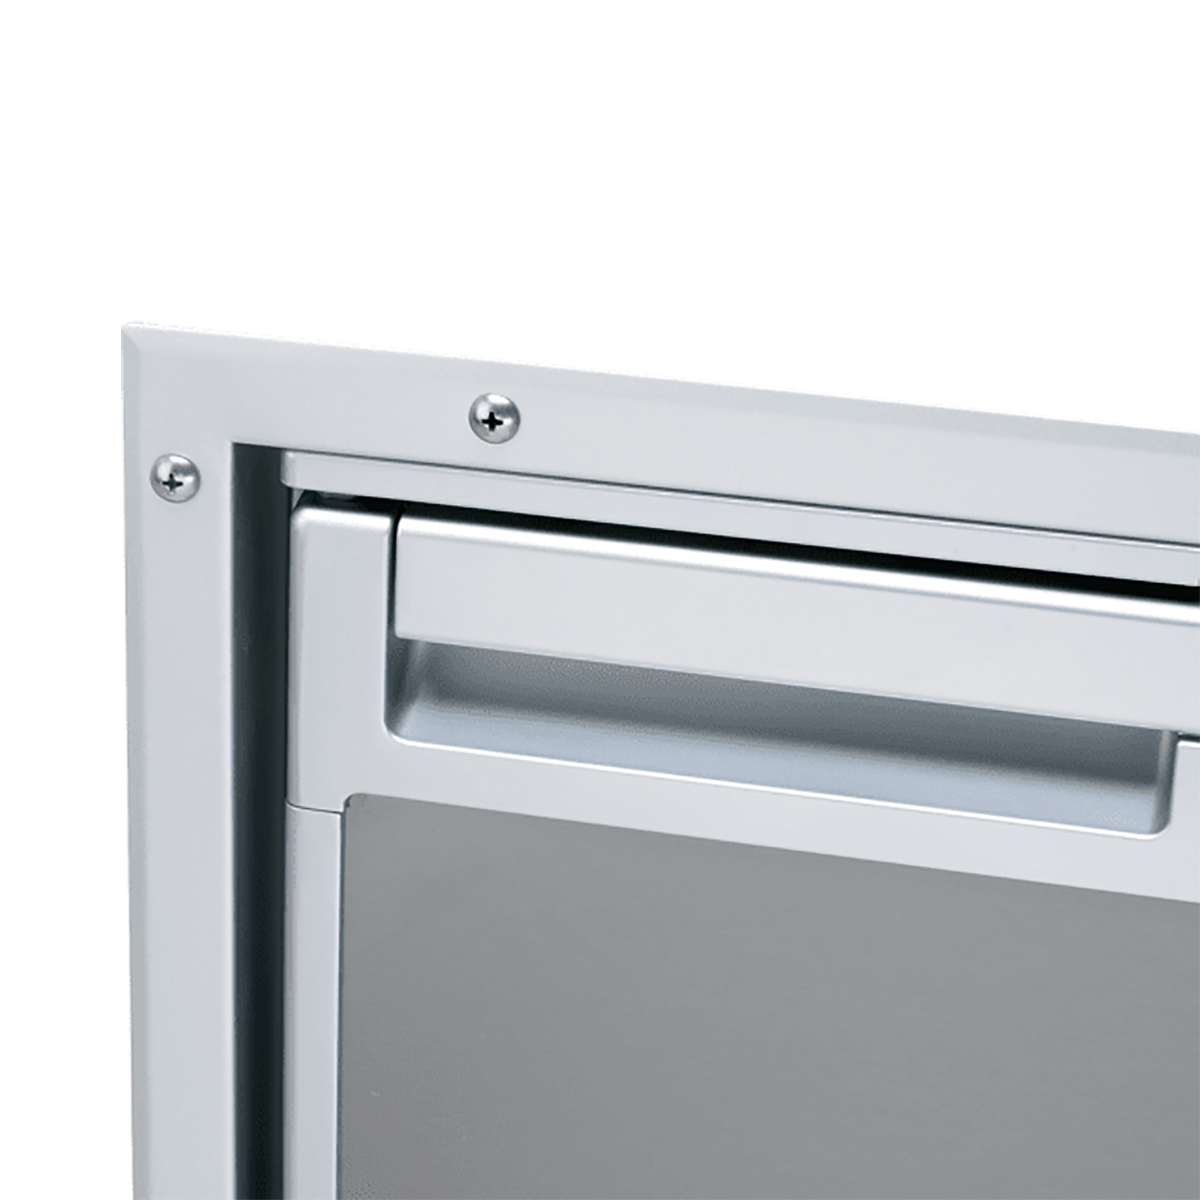 Монтажная рама с утапливаемым креплением Dometic CoolMatic CR-IFFM-50-N 9105306410 для холодильников CRP 40 / CRX 50 / CRD 50